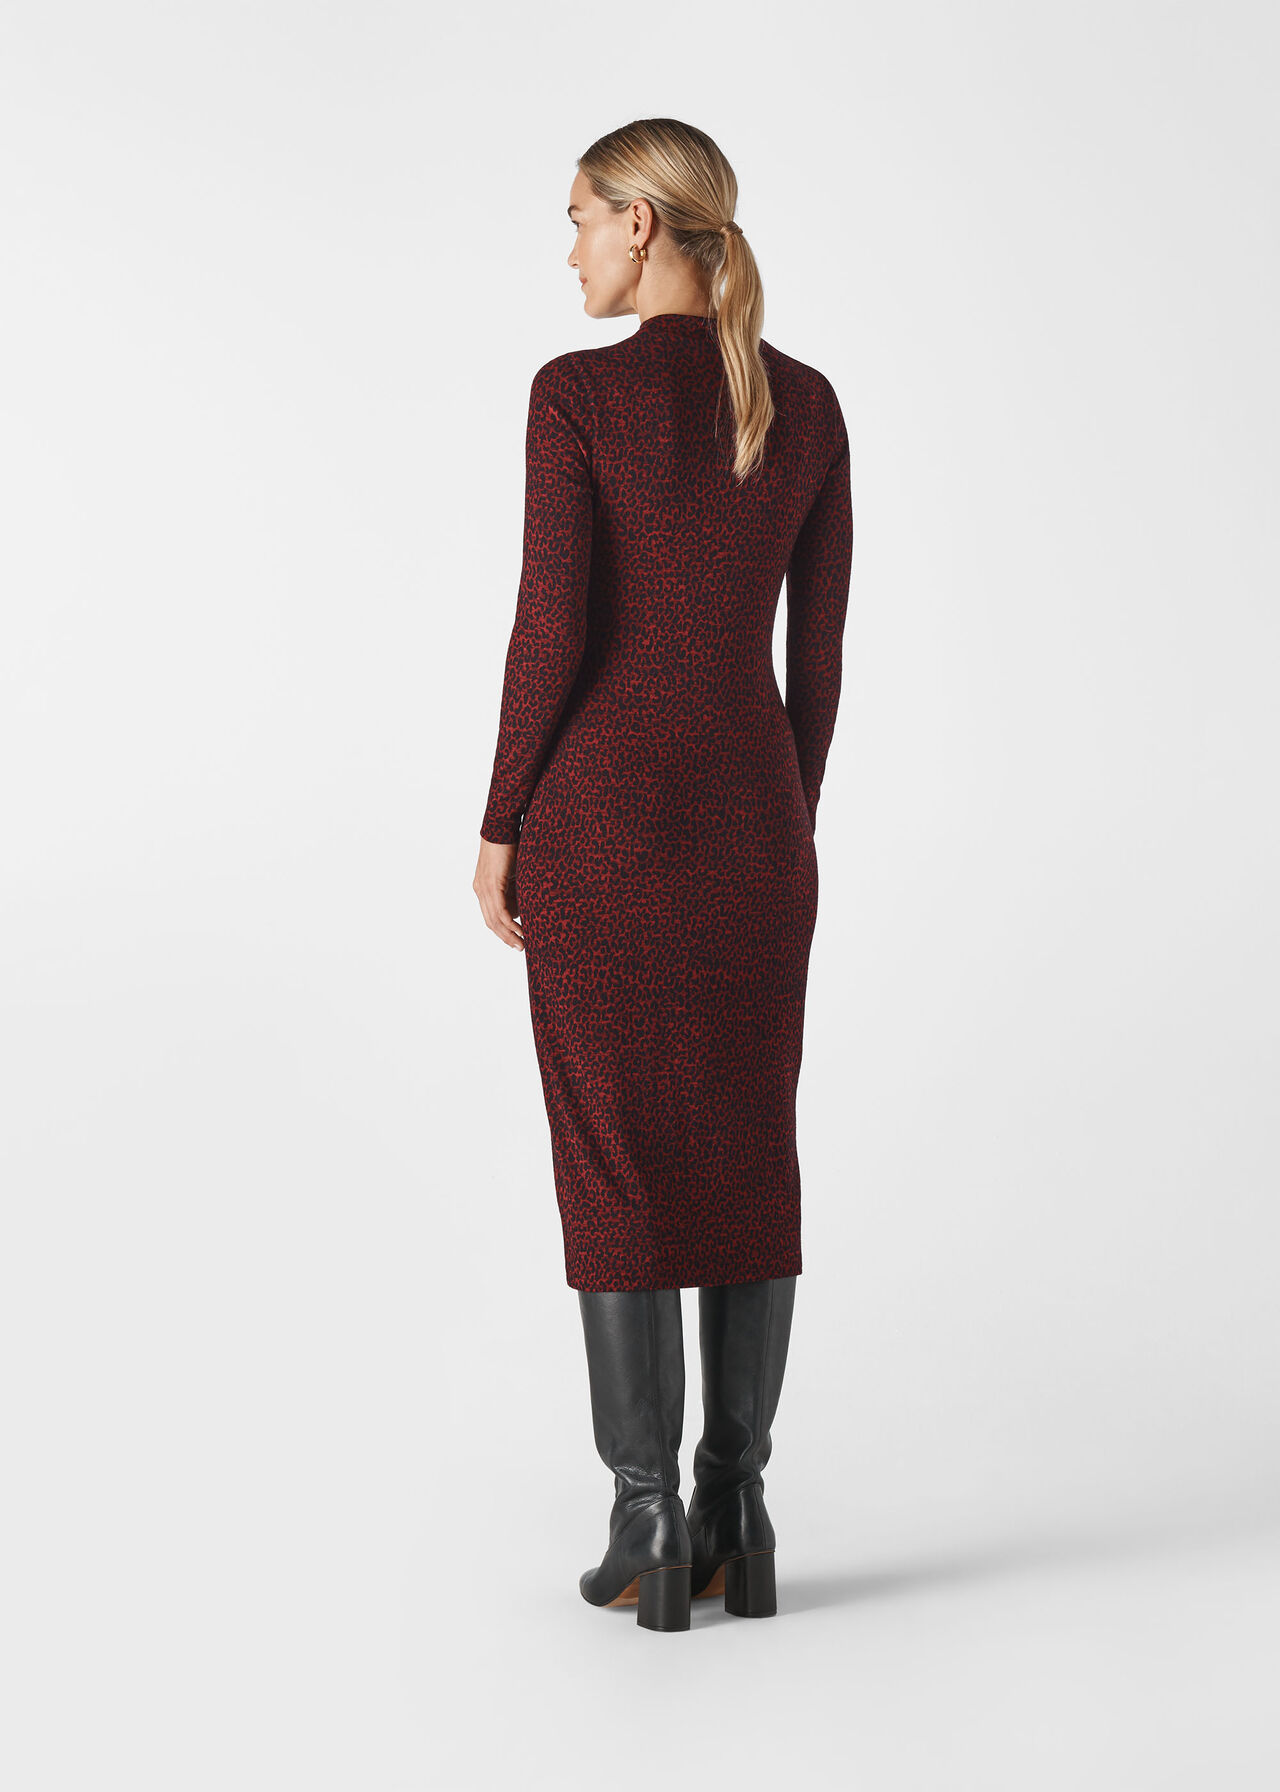 Burgundy Animal Jersey Jacquard Dress | WHISTLES